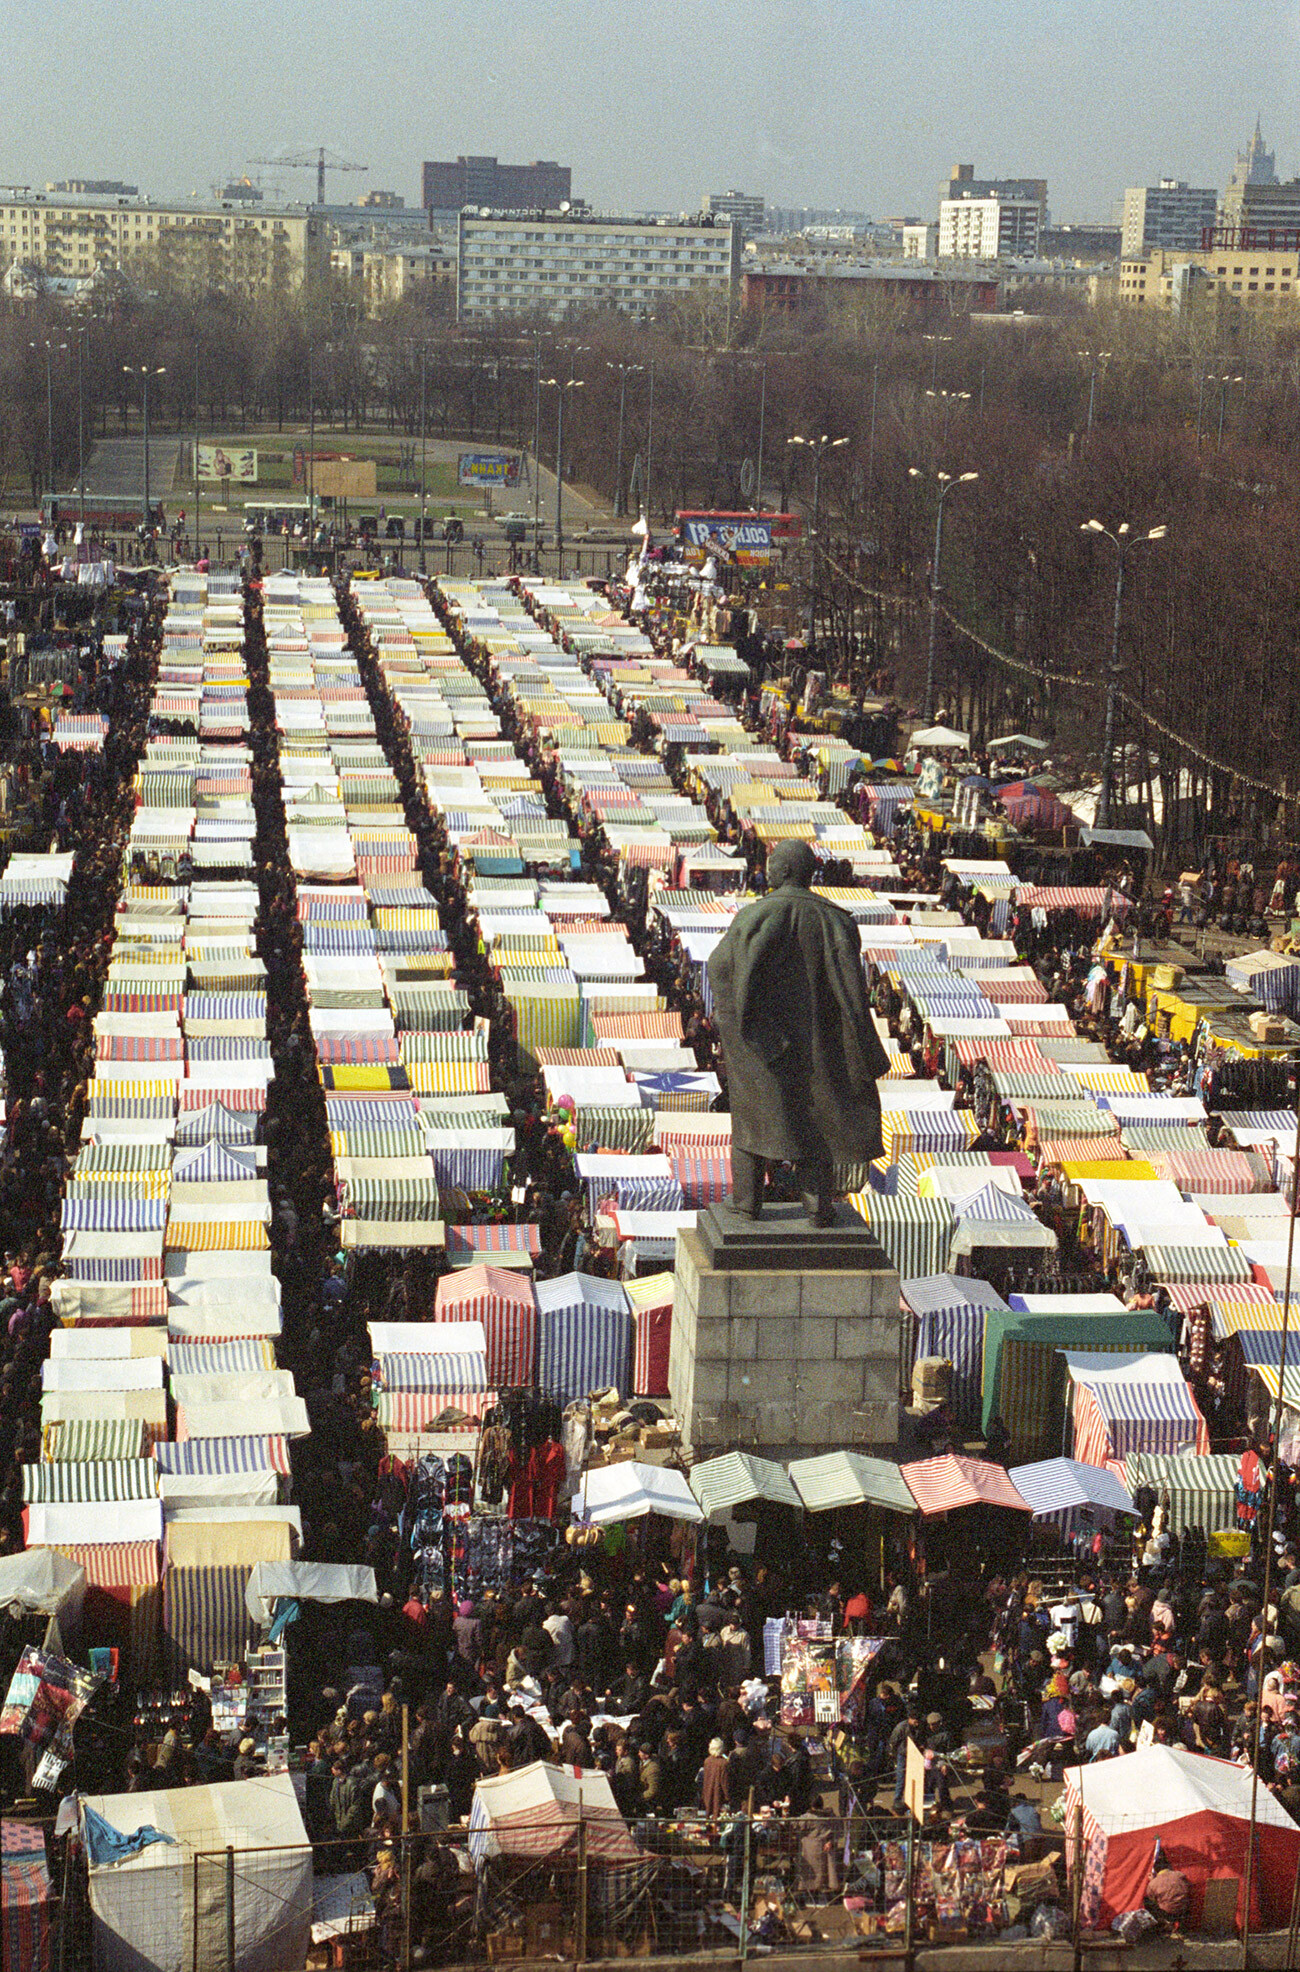 A trade market in Luzhniki, Moscow.